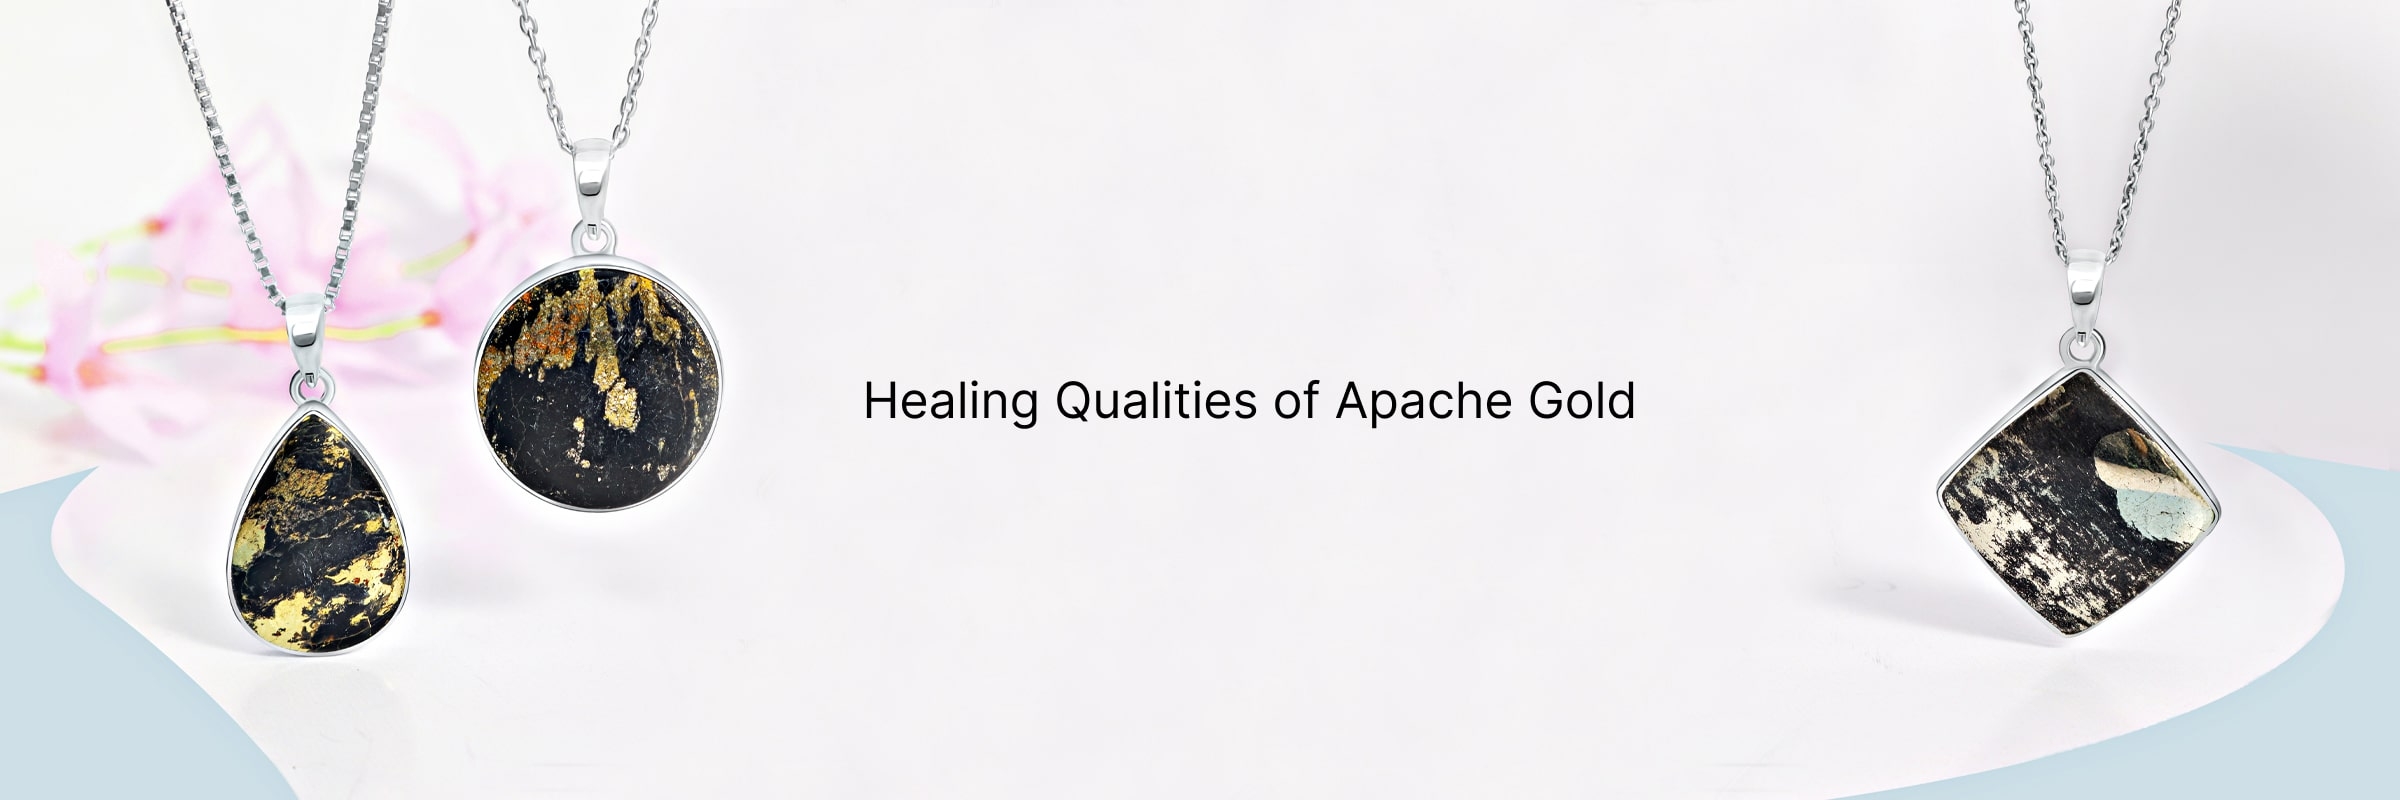 Apache Gold Healing Properties